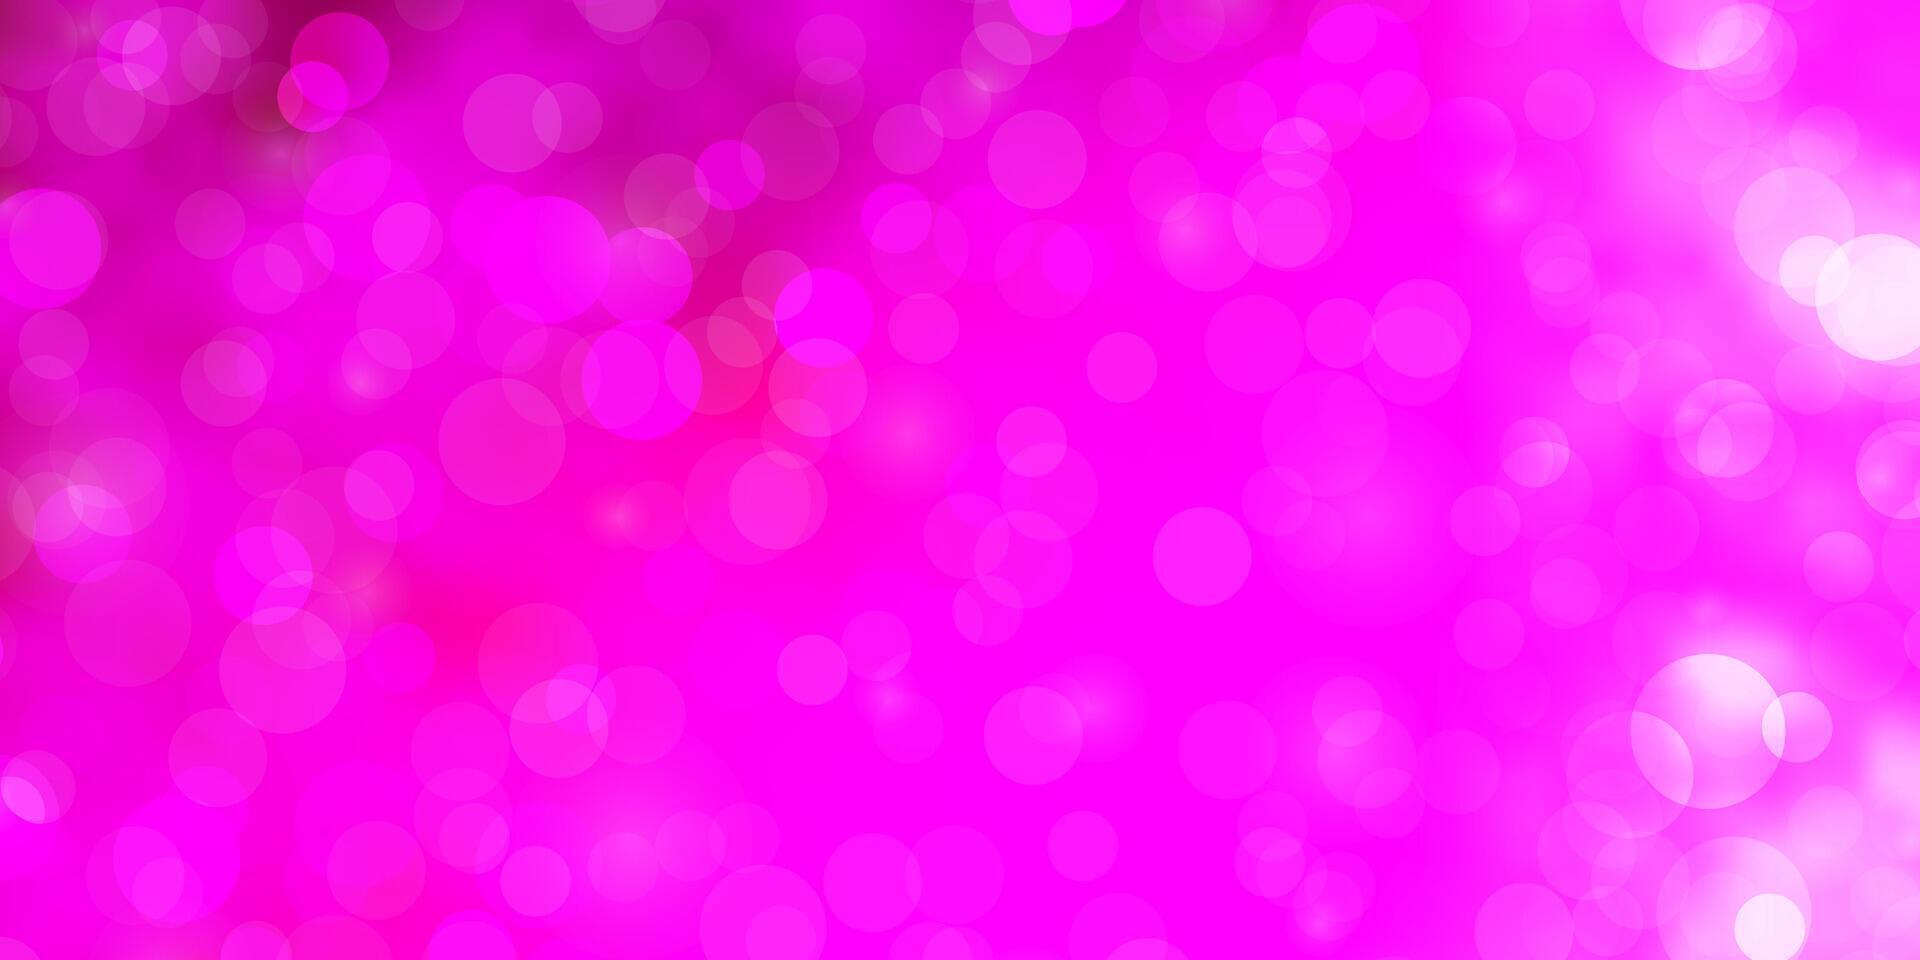 sfondo vettoriale rosa chiaro con cerchi.